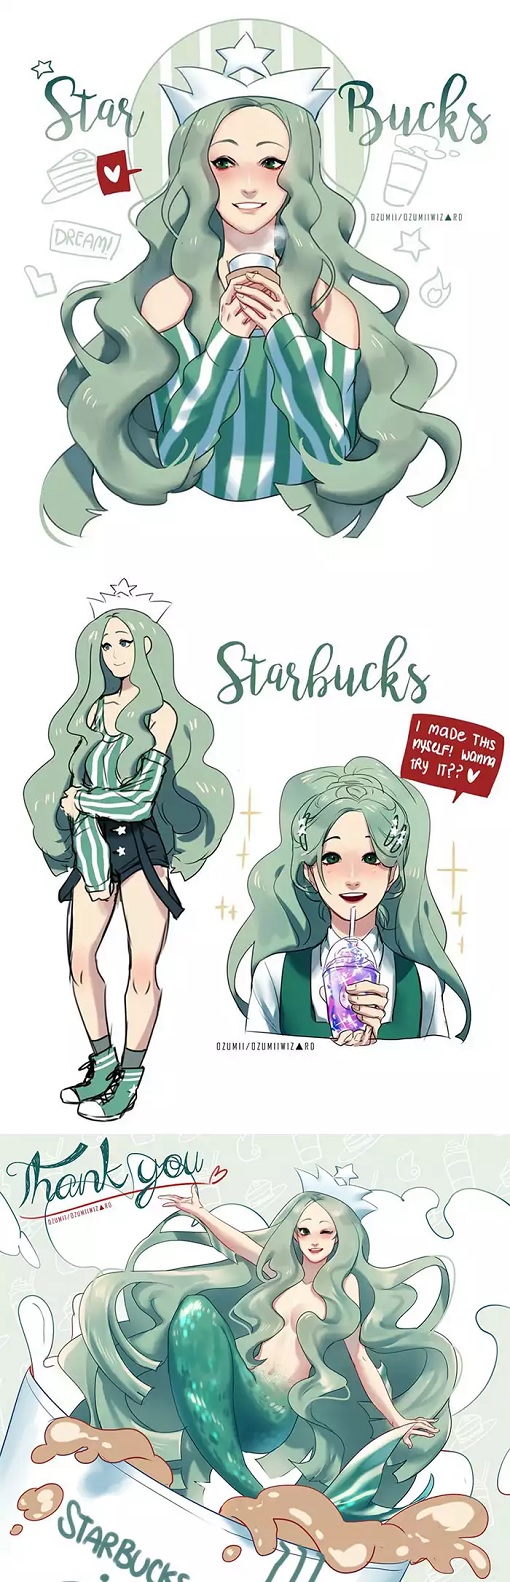 Starbucks - Manga - Graphic